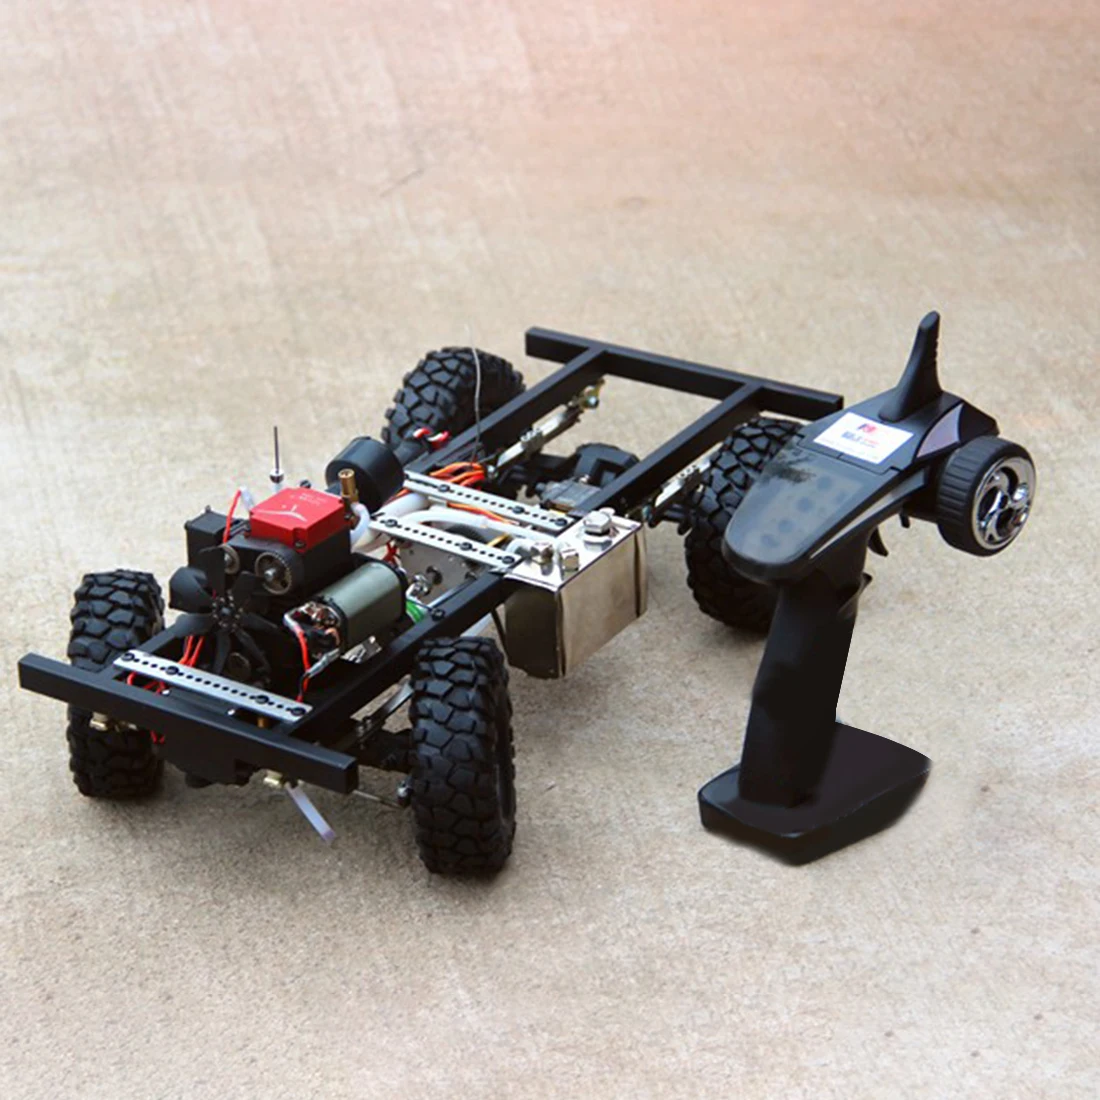 1:10 комплект топливной модели автомобиля(рама+ двигатель тоян+ детали двигателя тоян+ пульт дистанционного управления) модель обучающая игрушка подарок для детей и взрослых